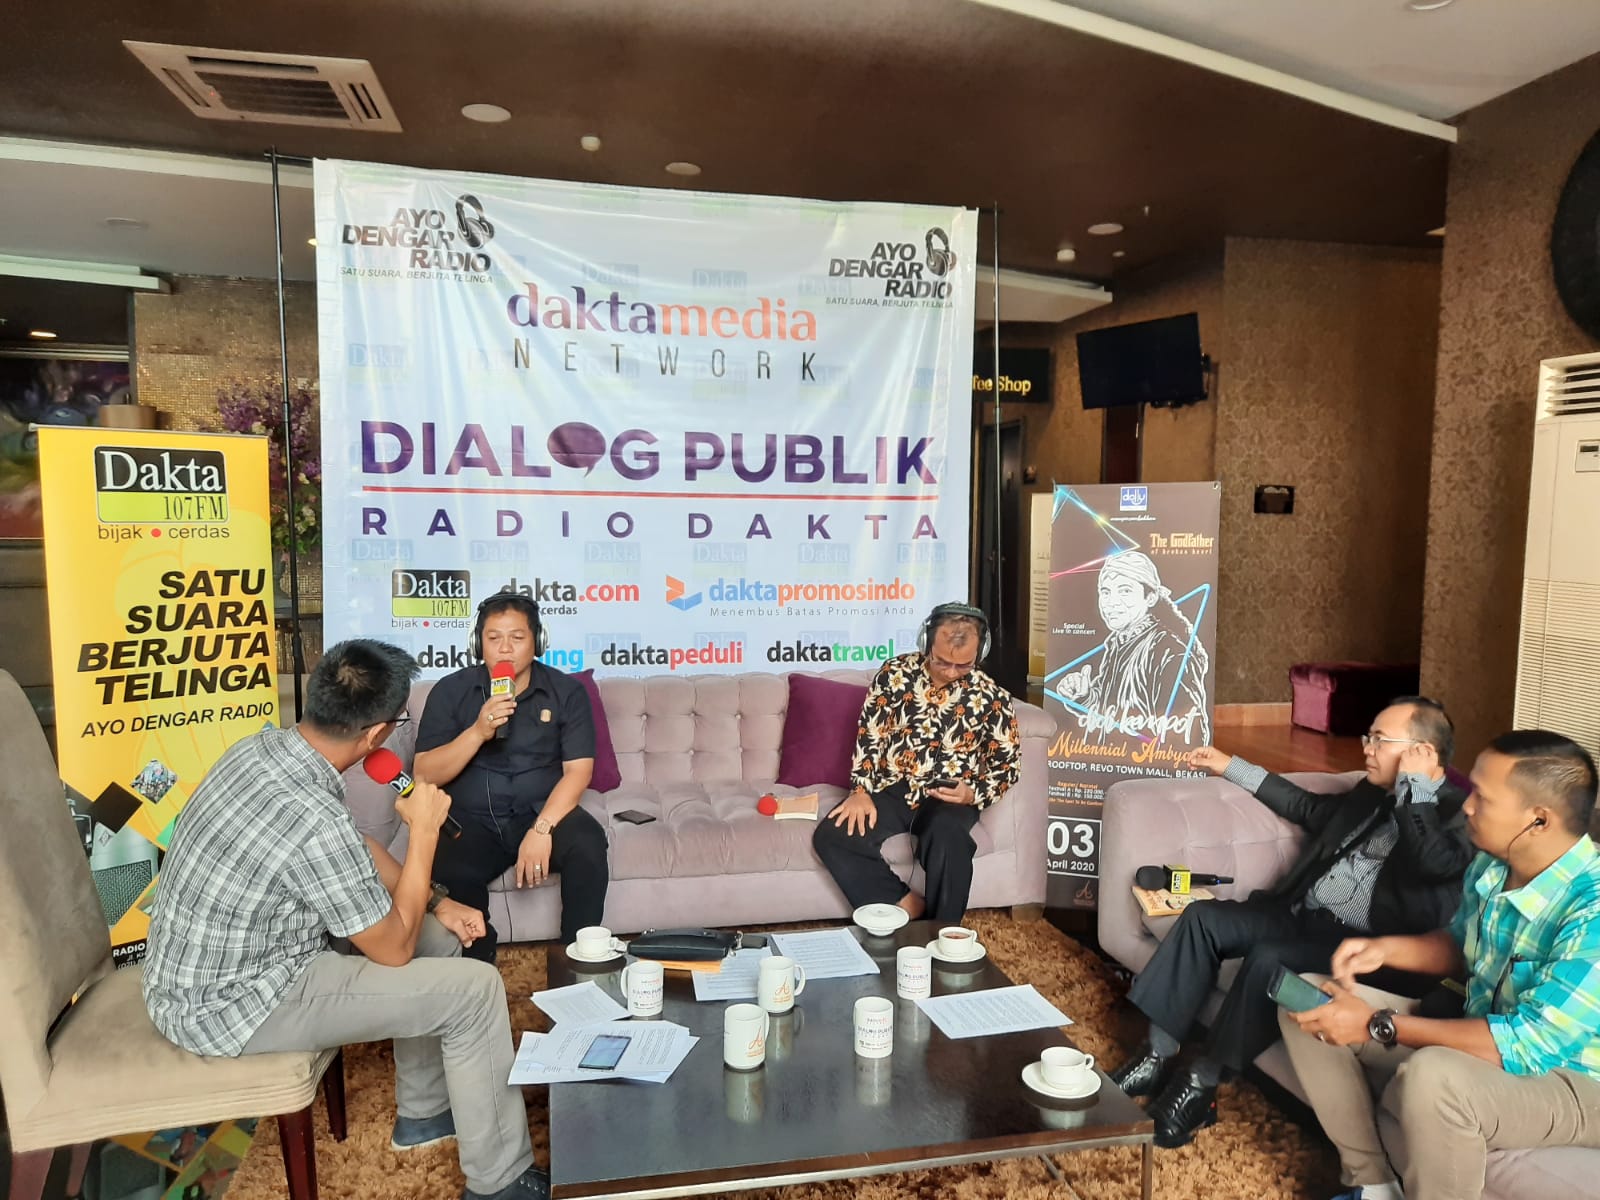 Dialog Publik Radio Dakta dengan tema Bekasi Siapa Gubernurnya